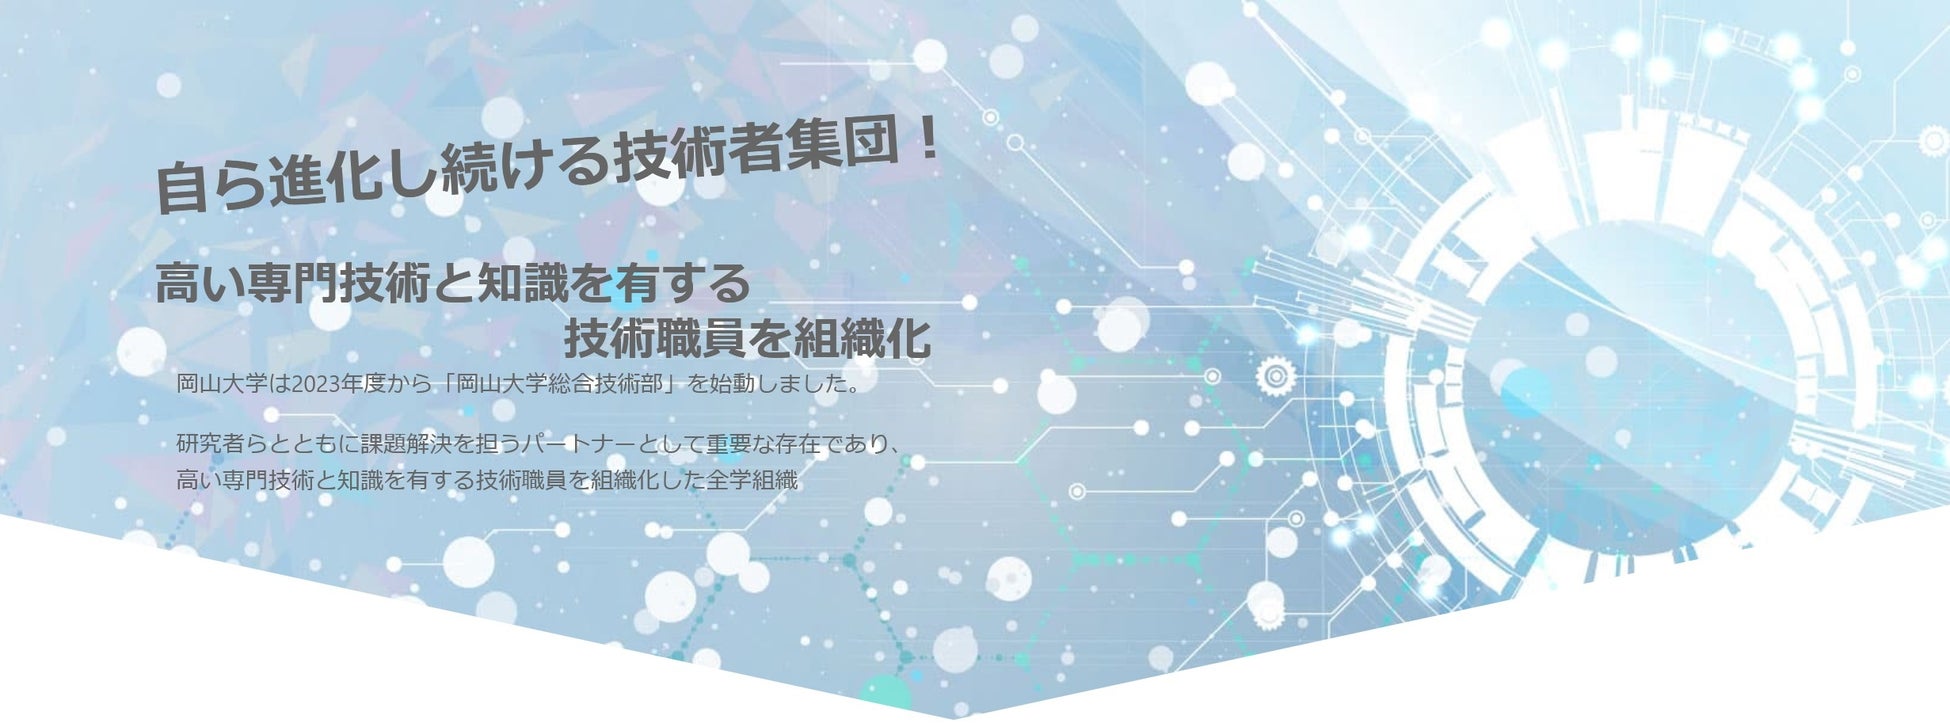 【岡山大学】岡山大学シンポジウム「チーム共用による技術職員組織構築の過去・現在・未来」を開催